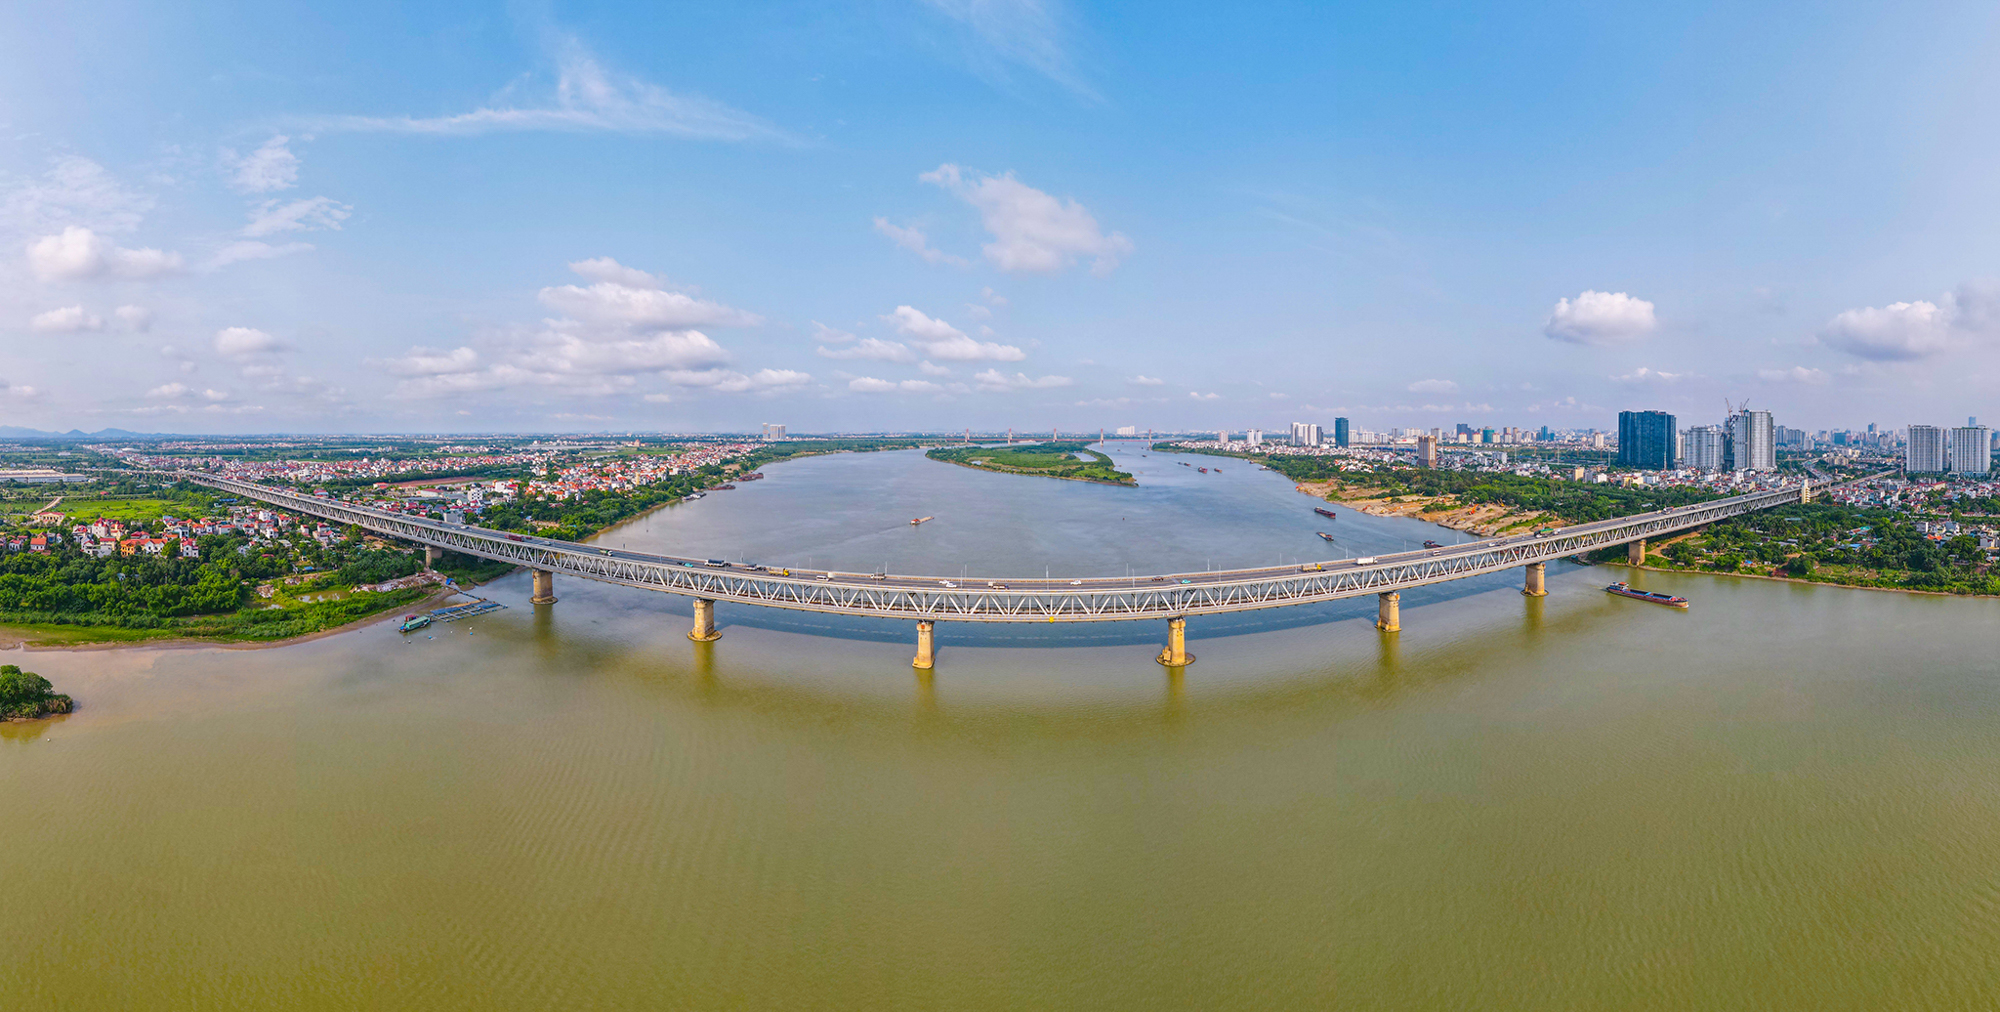 2 phút xem hết những dự án khủng của huyện sắp lên quận tại Hà Nội: 3 cầu vượt sông Hồng, thành phố thông minh 4 tỷ USD, đại dự án 35.000 tỷ của Vinhomes- Ảnh 11.